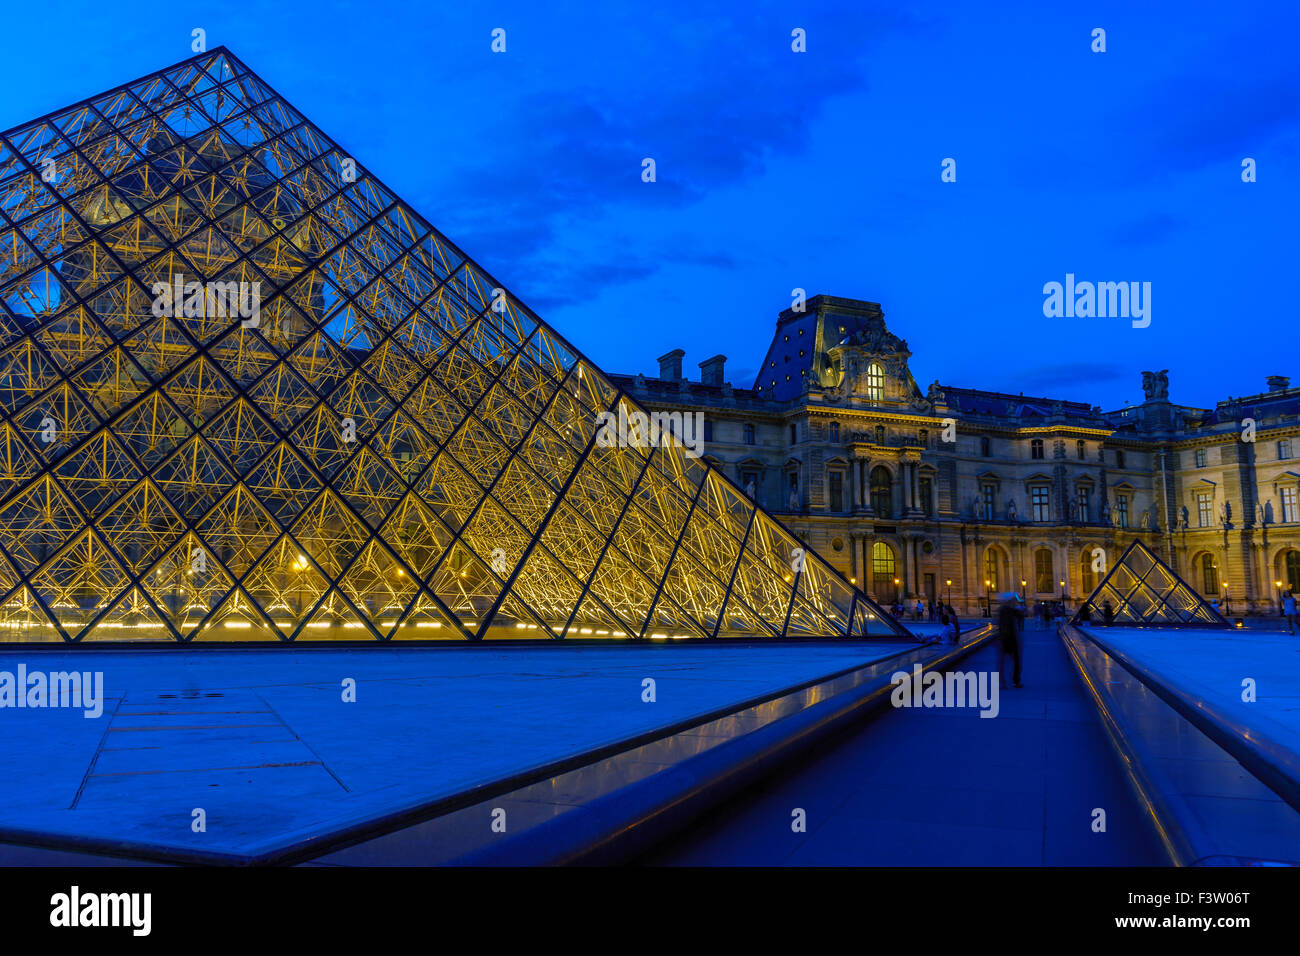 Le crépuscule tombe sur les Pyramides du Louvre sur une nuit d'été. Paris, France. Août, 2015. Banque D'Images